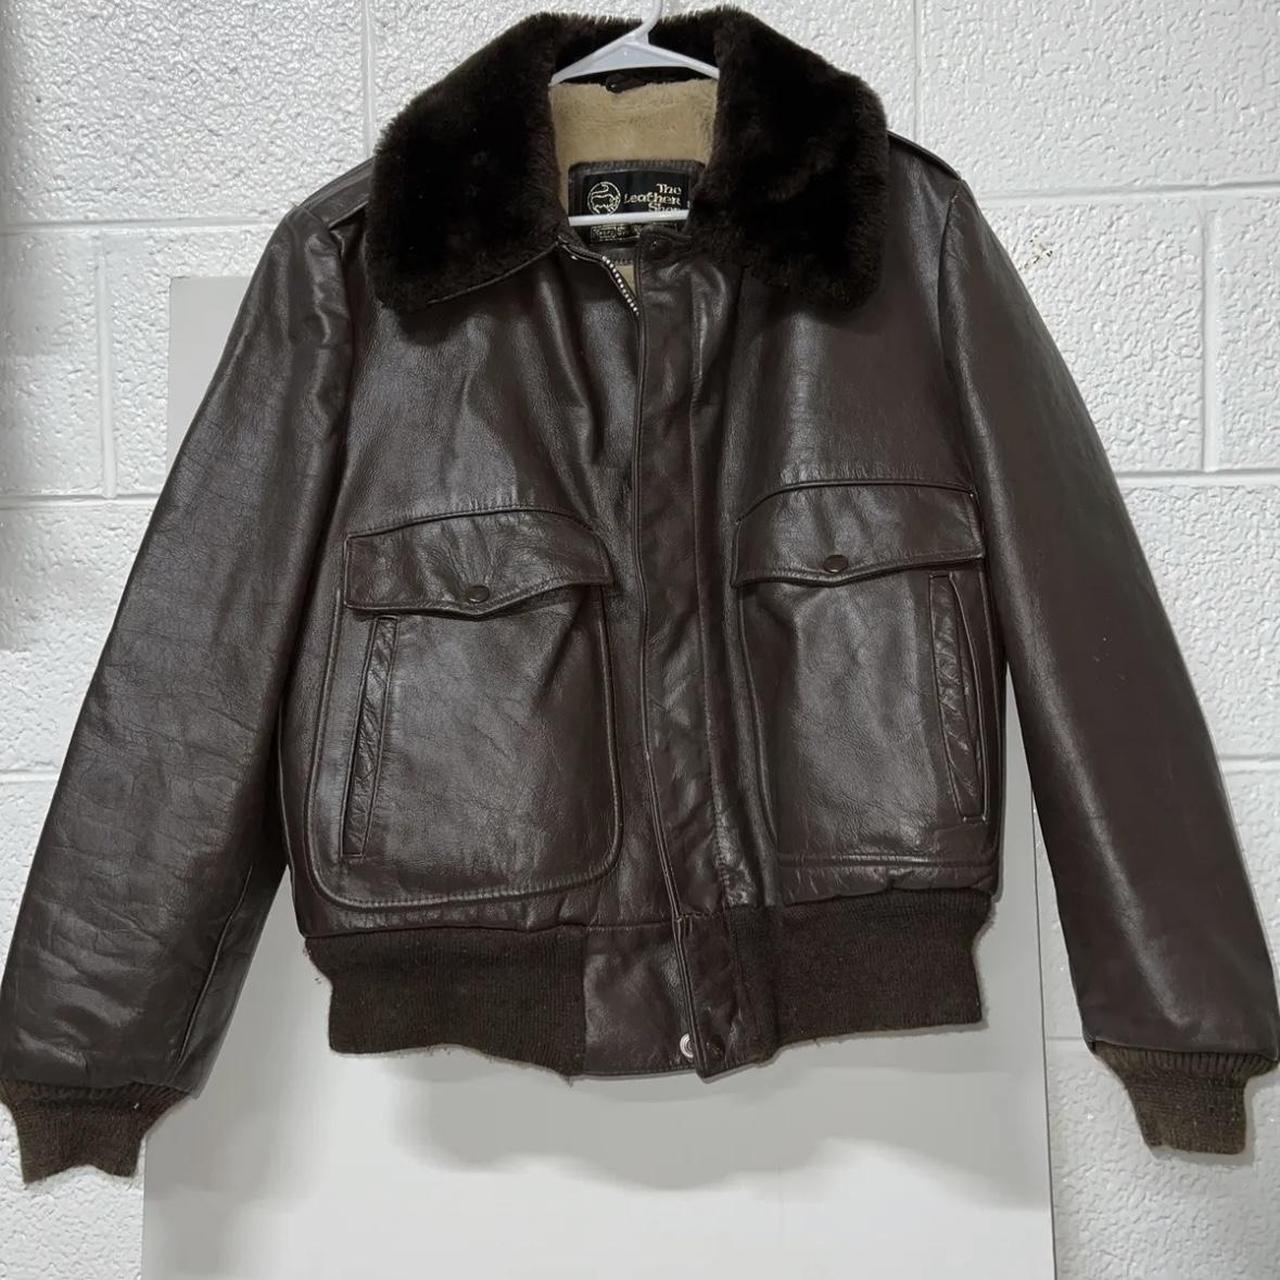 Vintage Leather Bomber Fur Jacket, 40 R. I wear a... - Depop